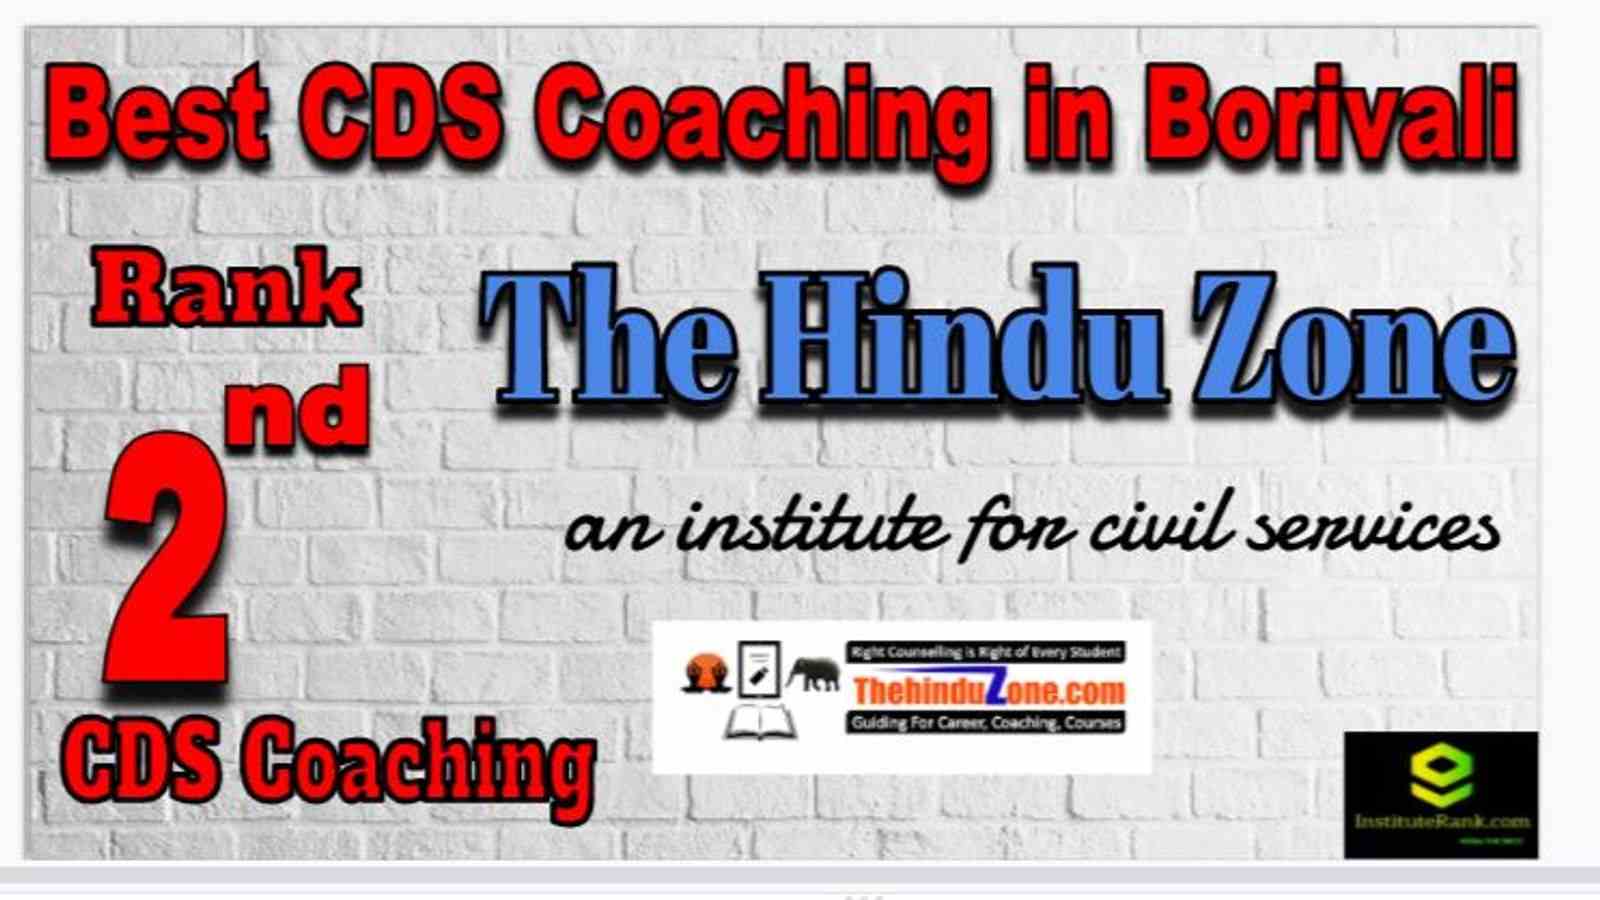 Rank 2 Best CDS Coaching in Borivali